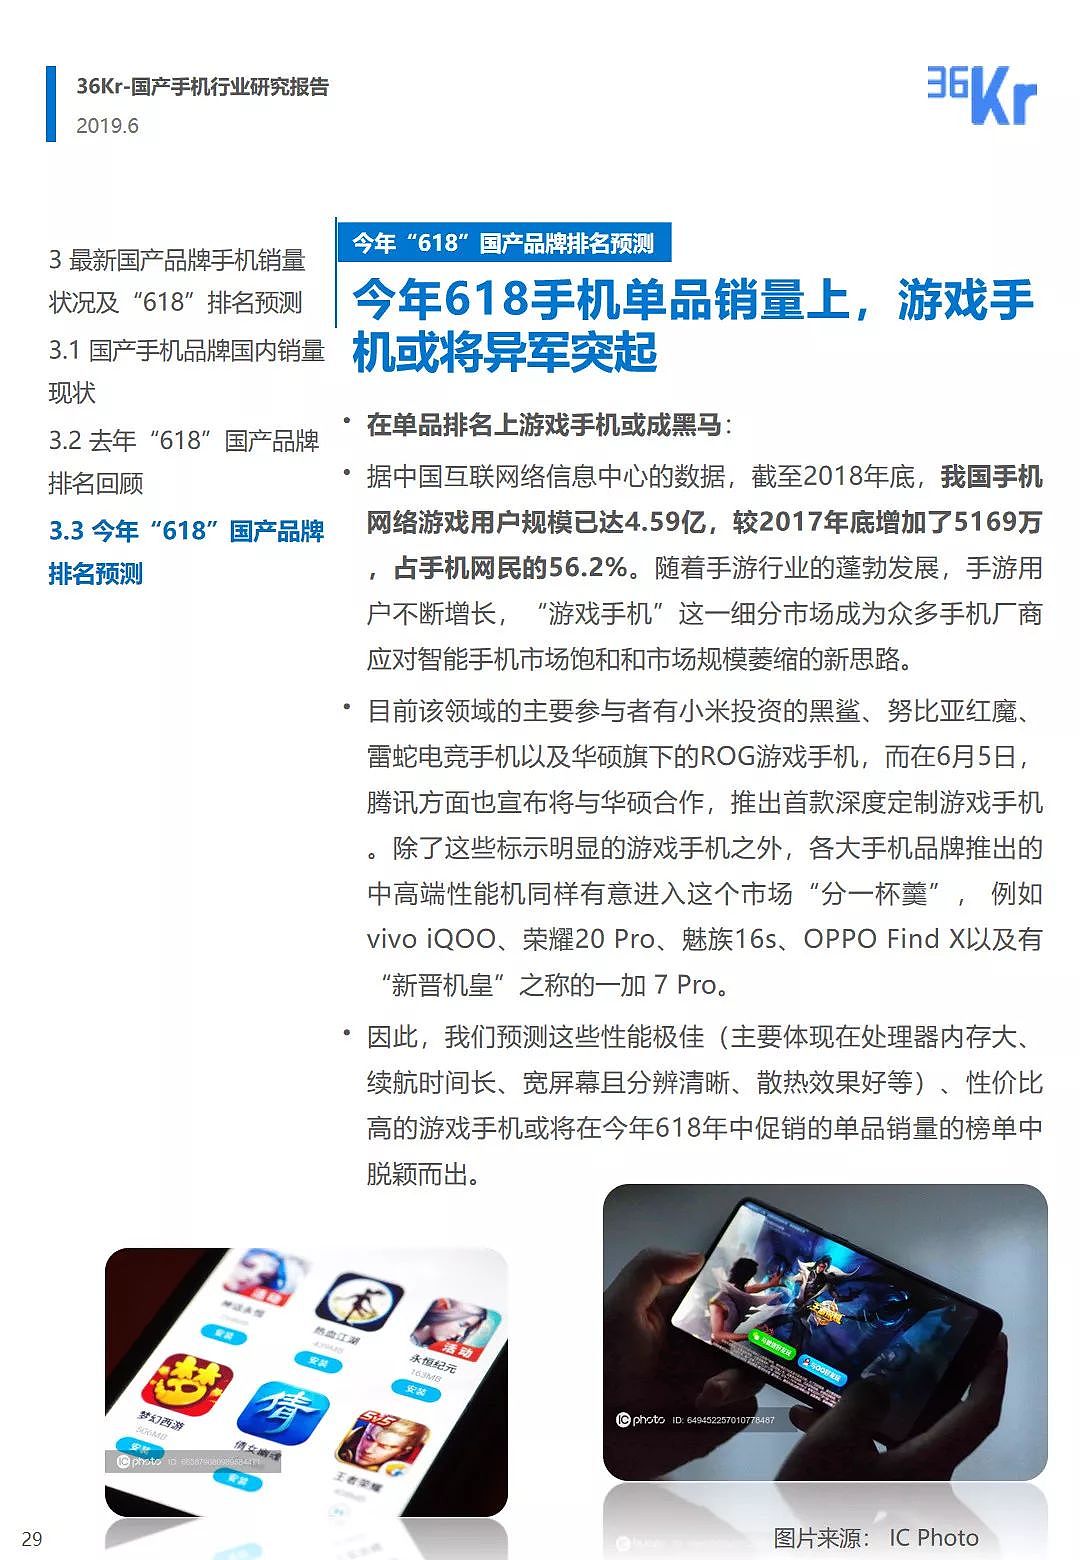 中国手机品牌市场营销研究报告 | 36氪研究 - 30